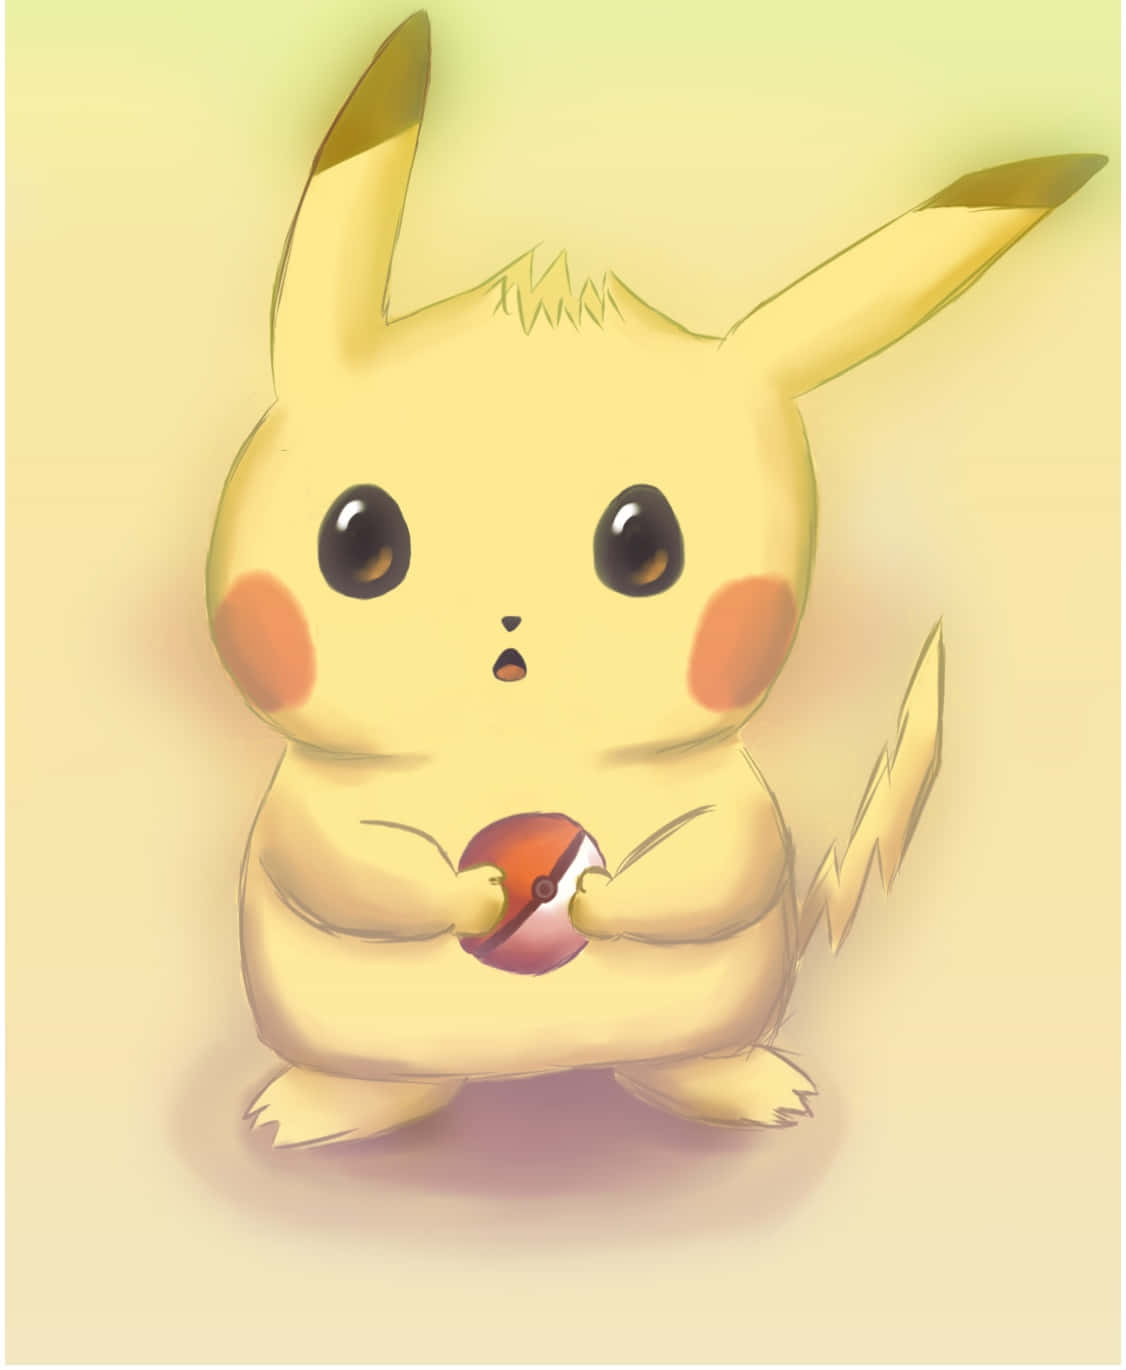 Desenhode Pikachu - Imagem De Papel De Parede Para Computador Ou Celular.